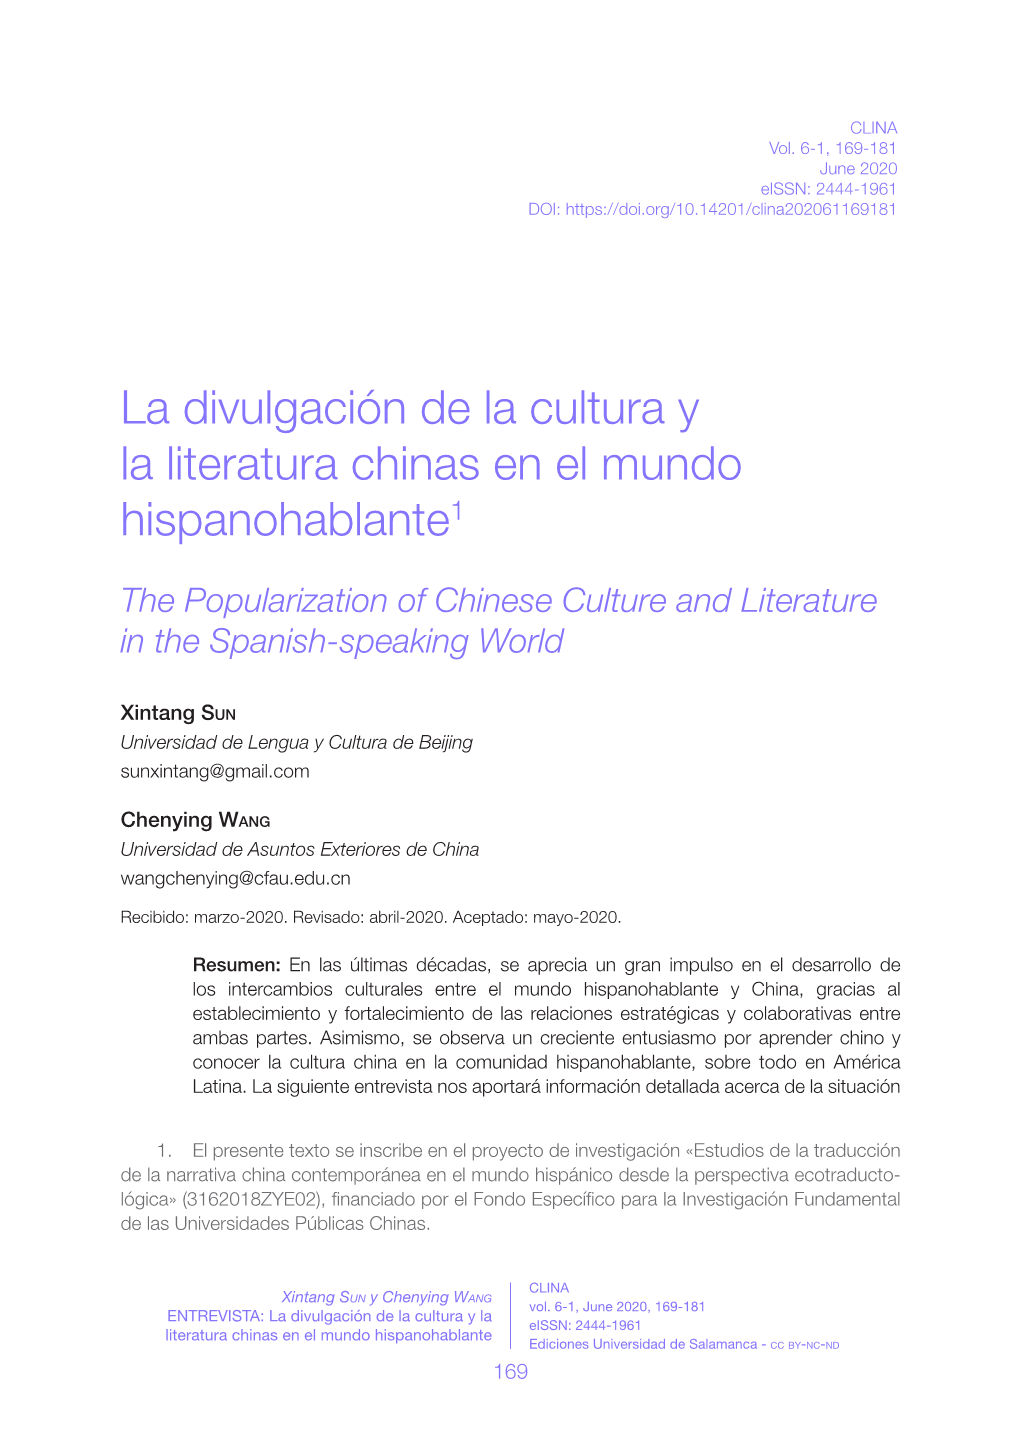 La Divulgación De La Cultura Y La Literatura Chinas En El Mundo Hispanohablante1